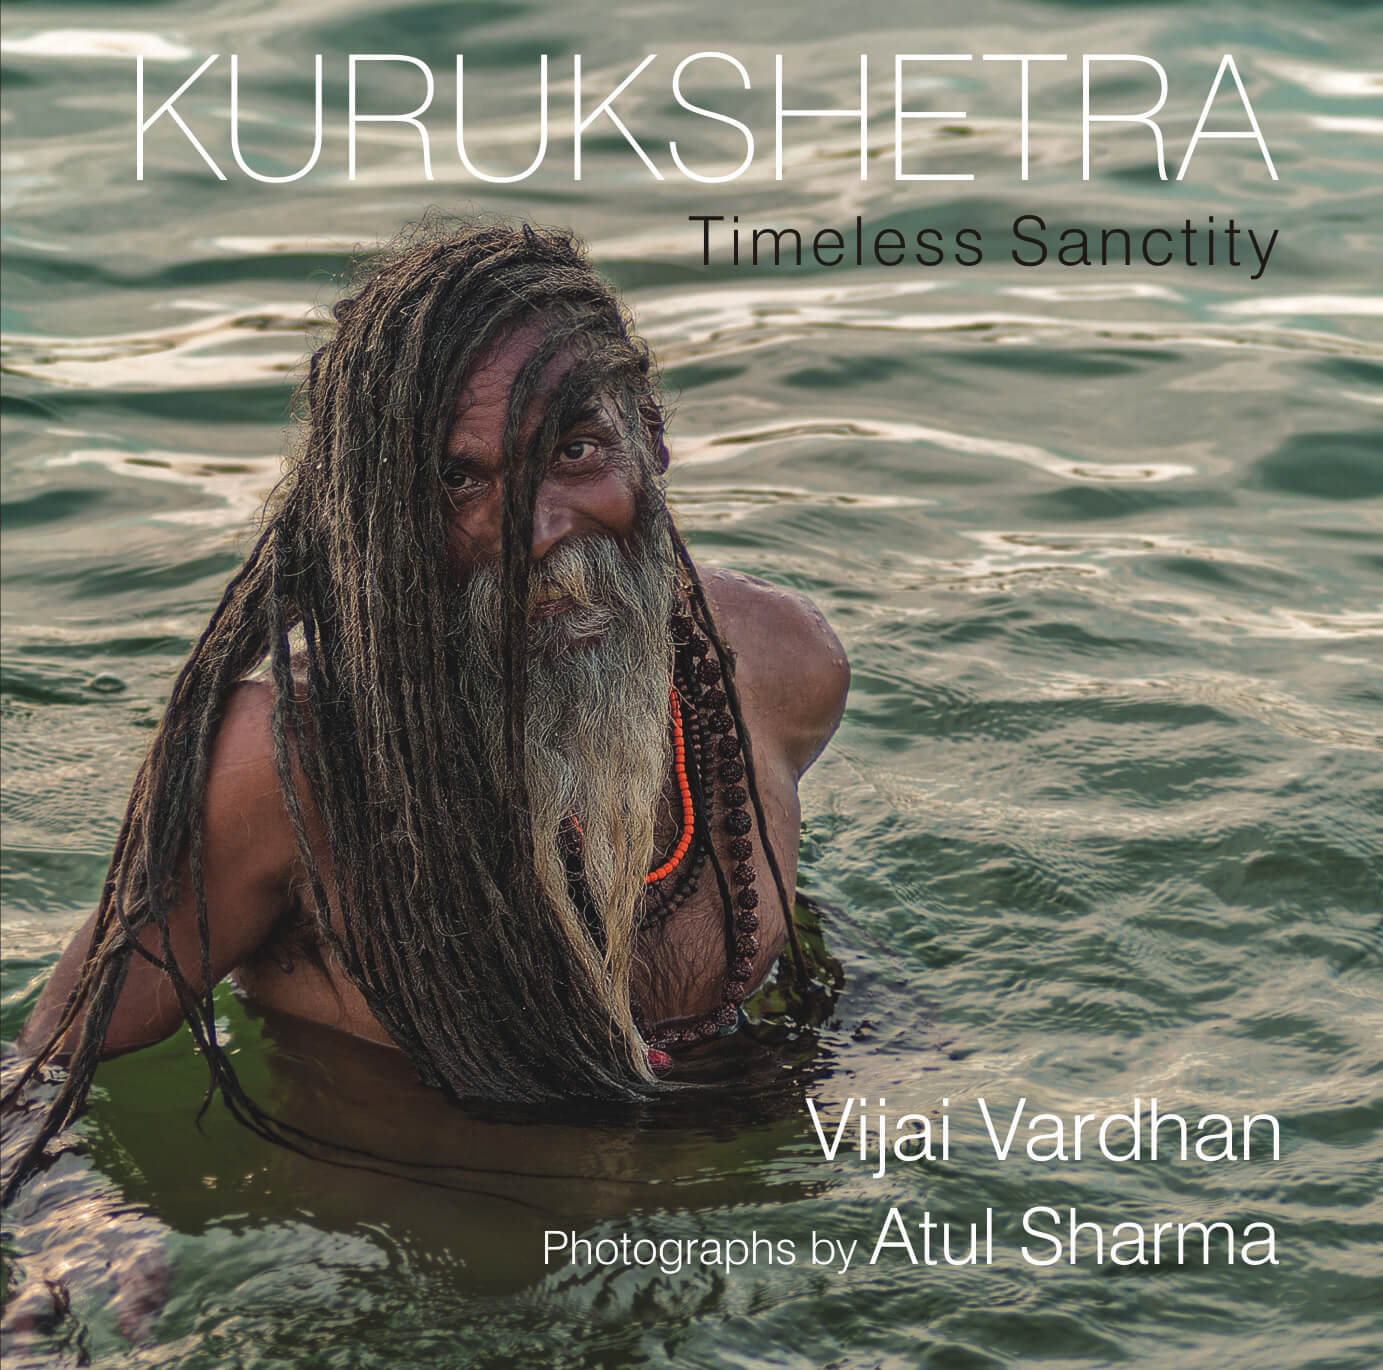 Kurukshetra: Timeless Sanctity